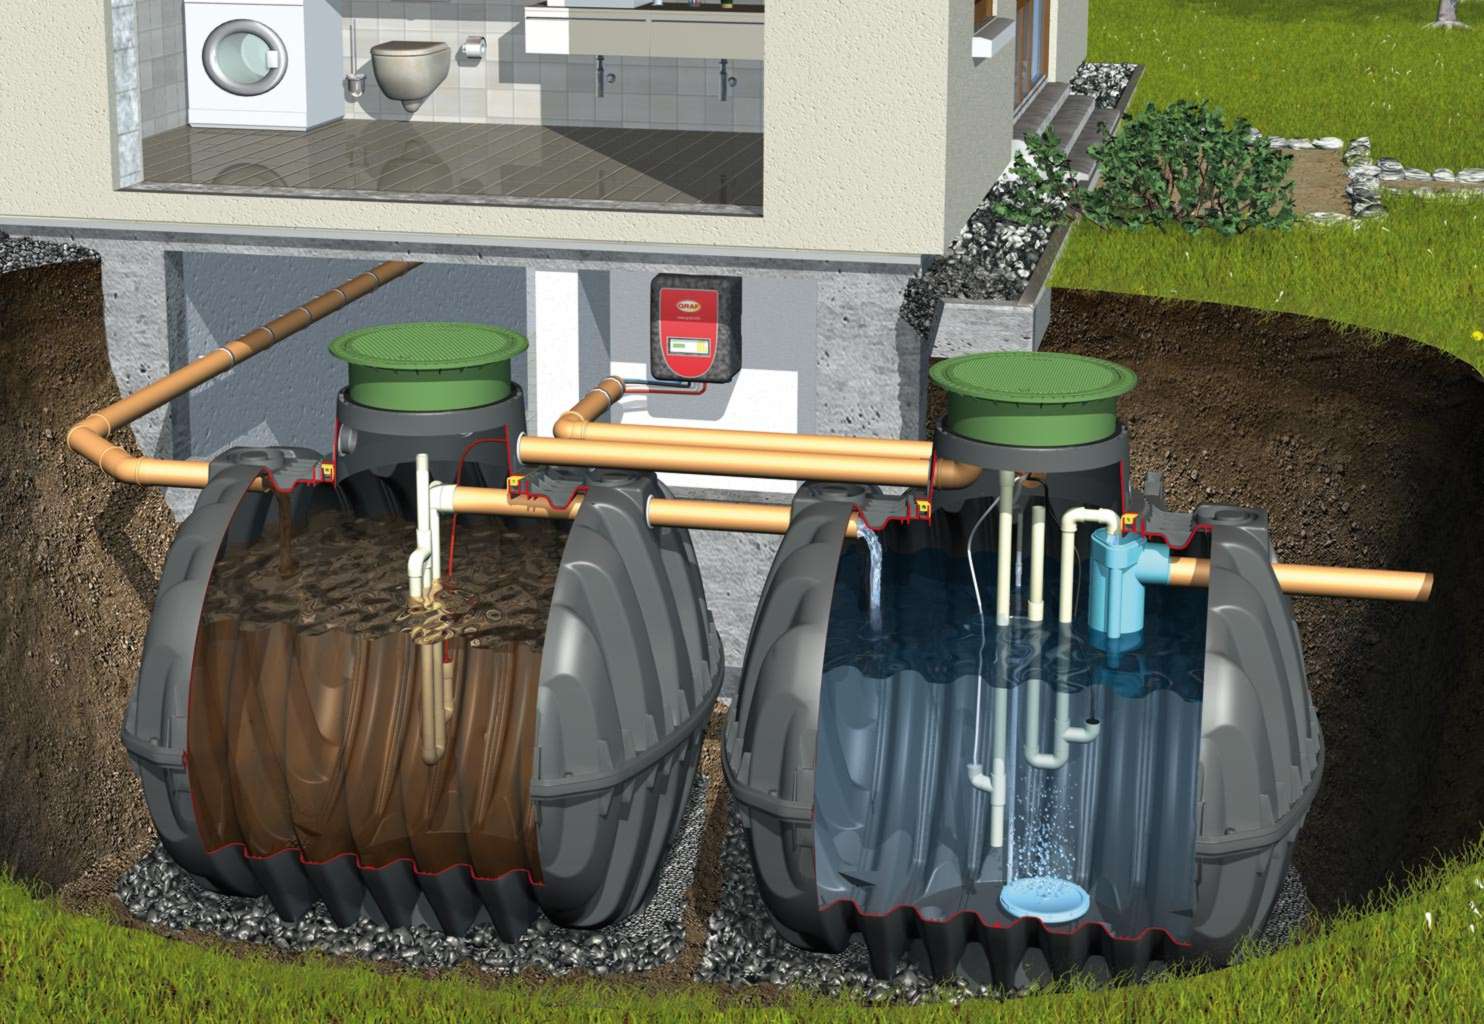 Устройство канализационного колодца — снип, виды, назначение / элементы и оборудование / канализационные системы / публикации / санитарно-технические работы